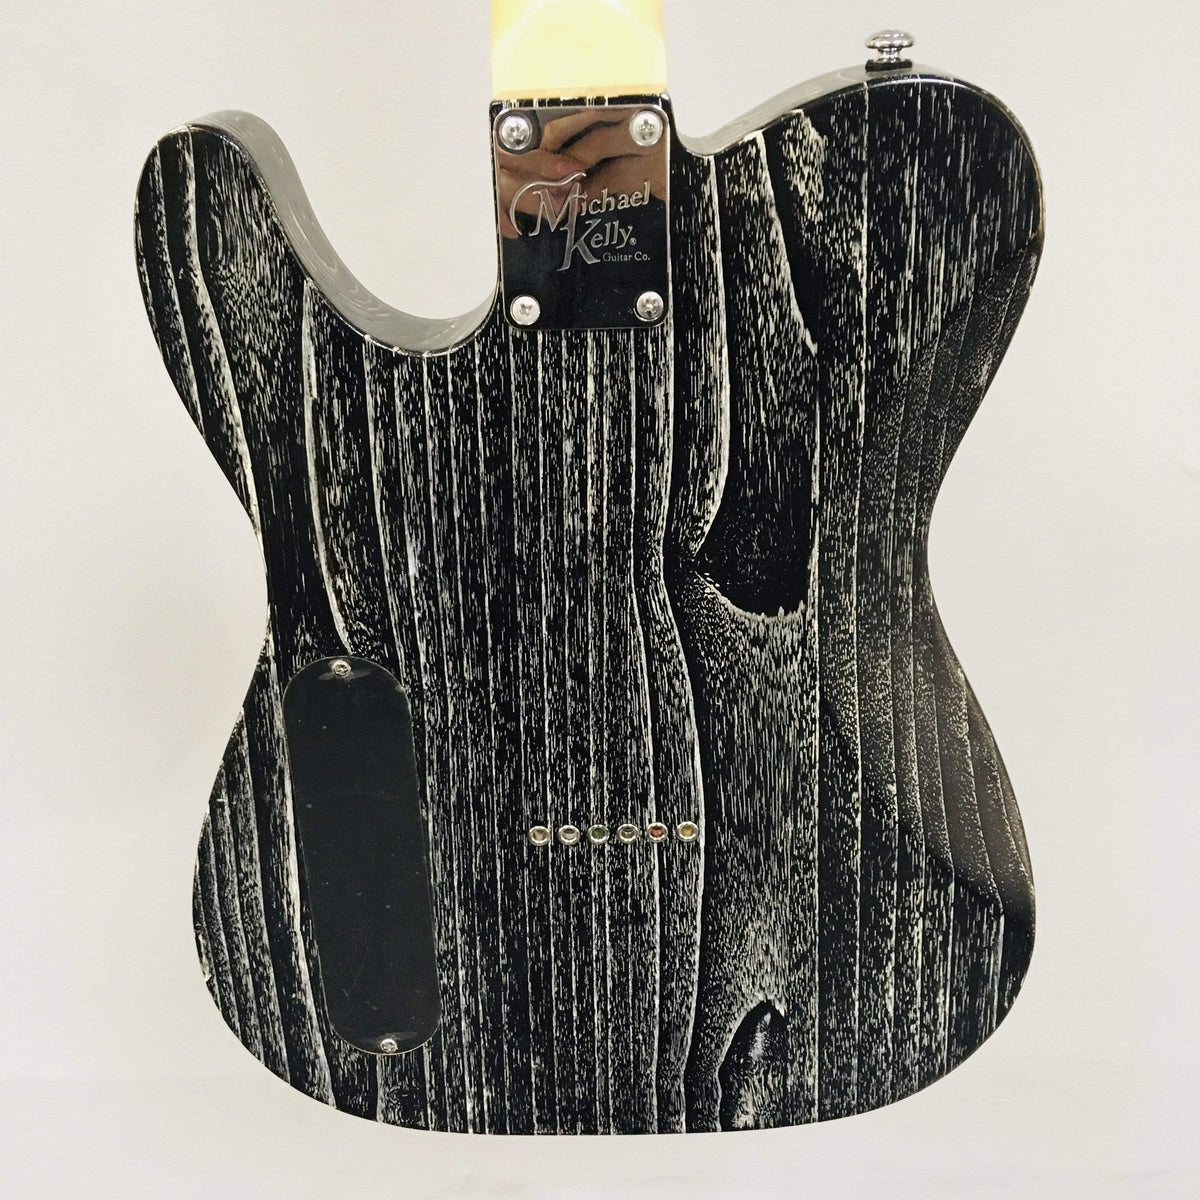 Michael Kelly Black Blast 54&#39; Prototype Guitars on Main